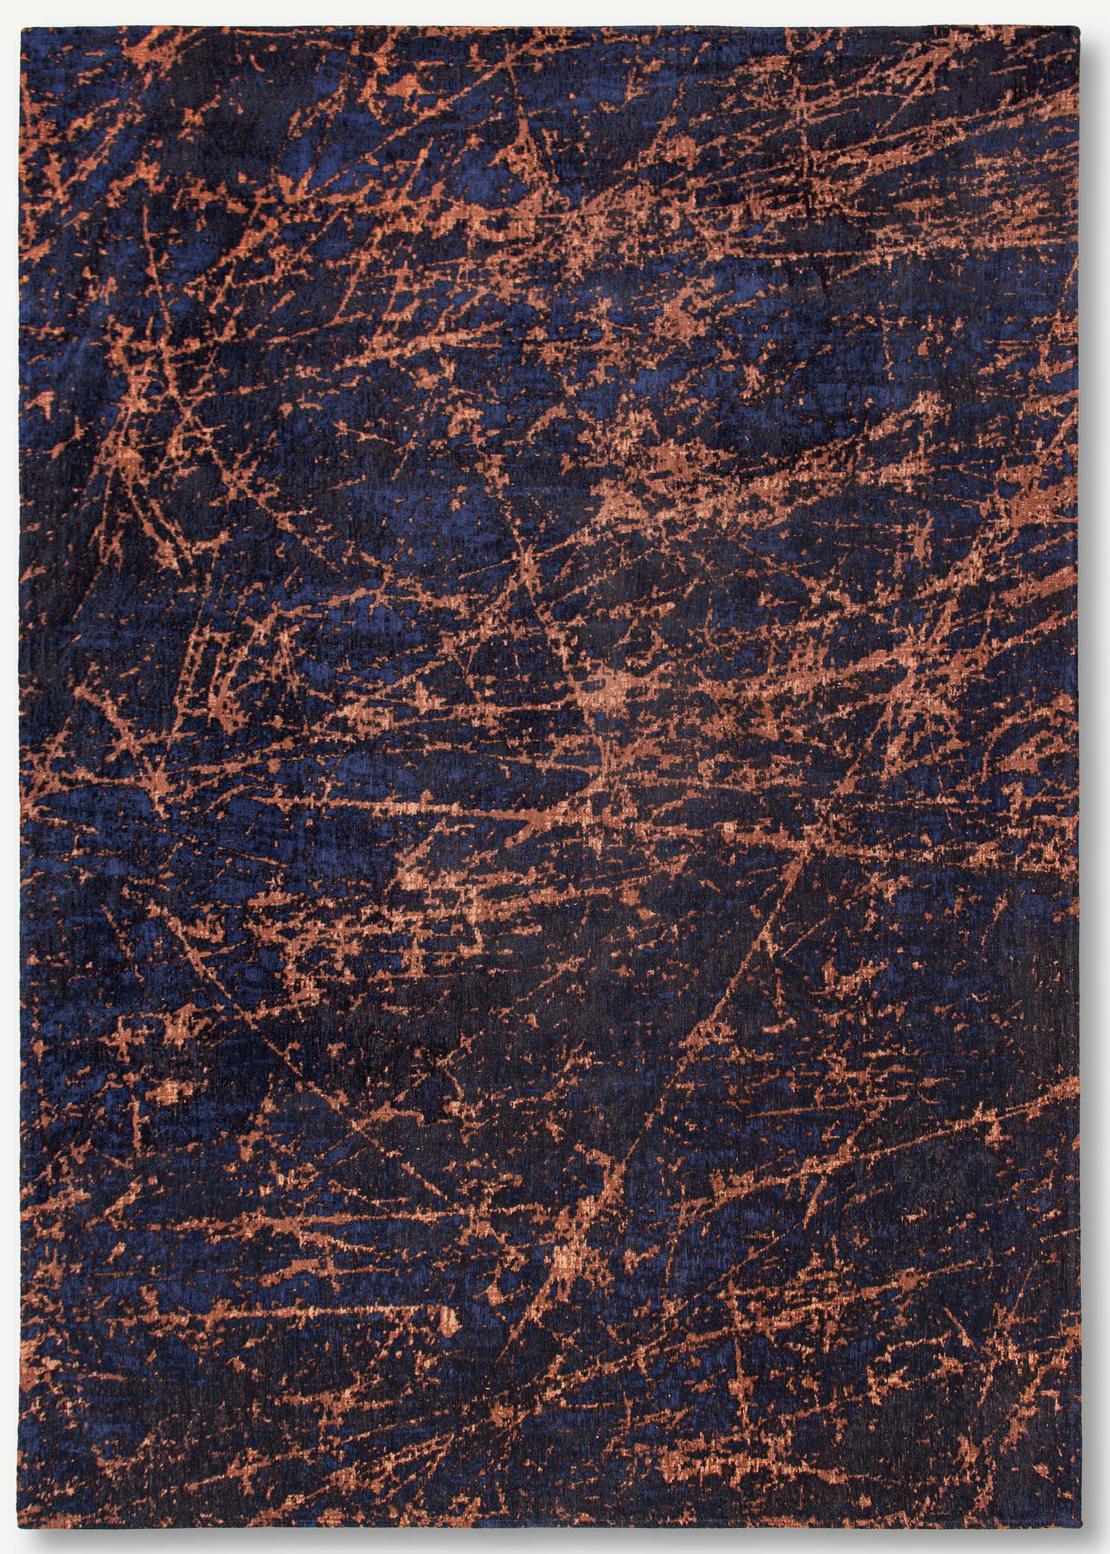 Art Black & Orange Belgian Rug ☞ Size: 7' 7" x 11' (230 x 330 cm)